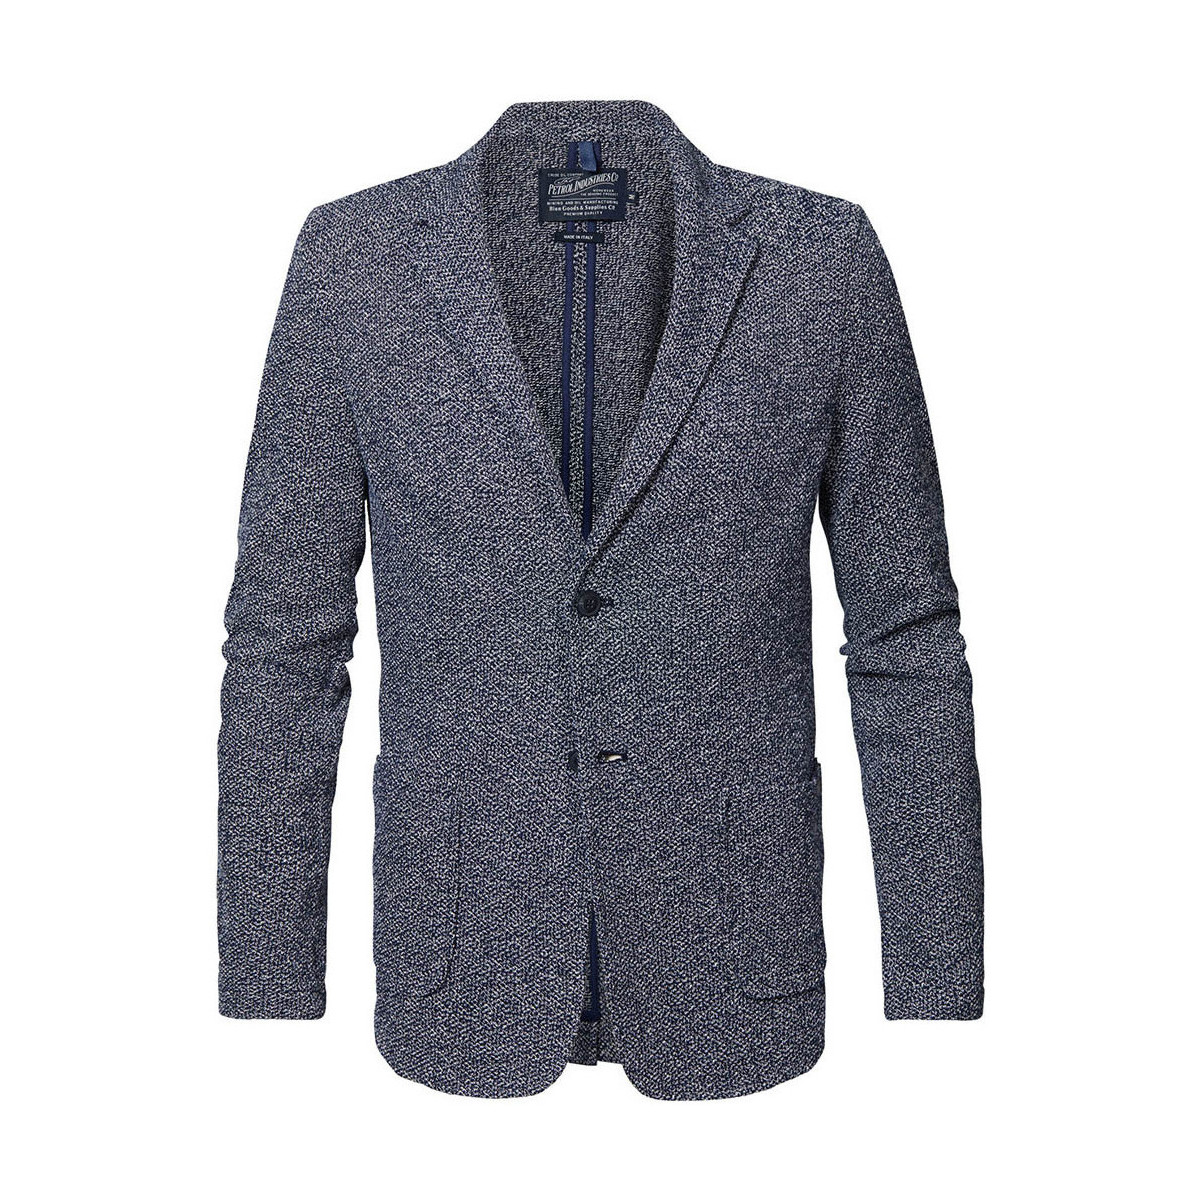 Vêtements Homme Vestes / Blazers Petrol Industries Veste de blazer coton Bleu